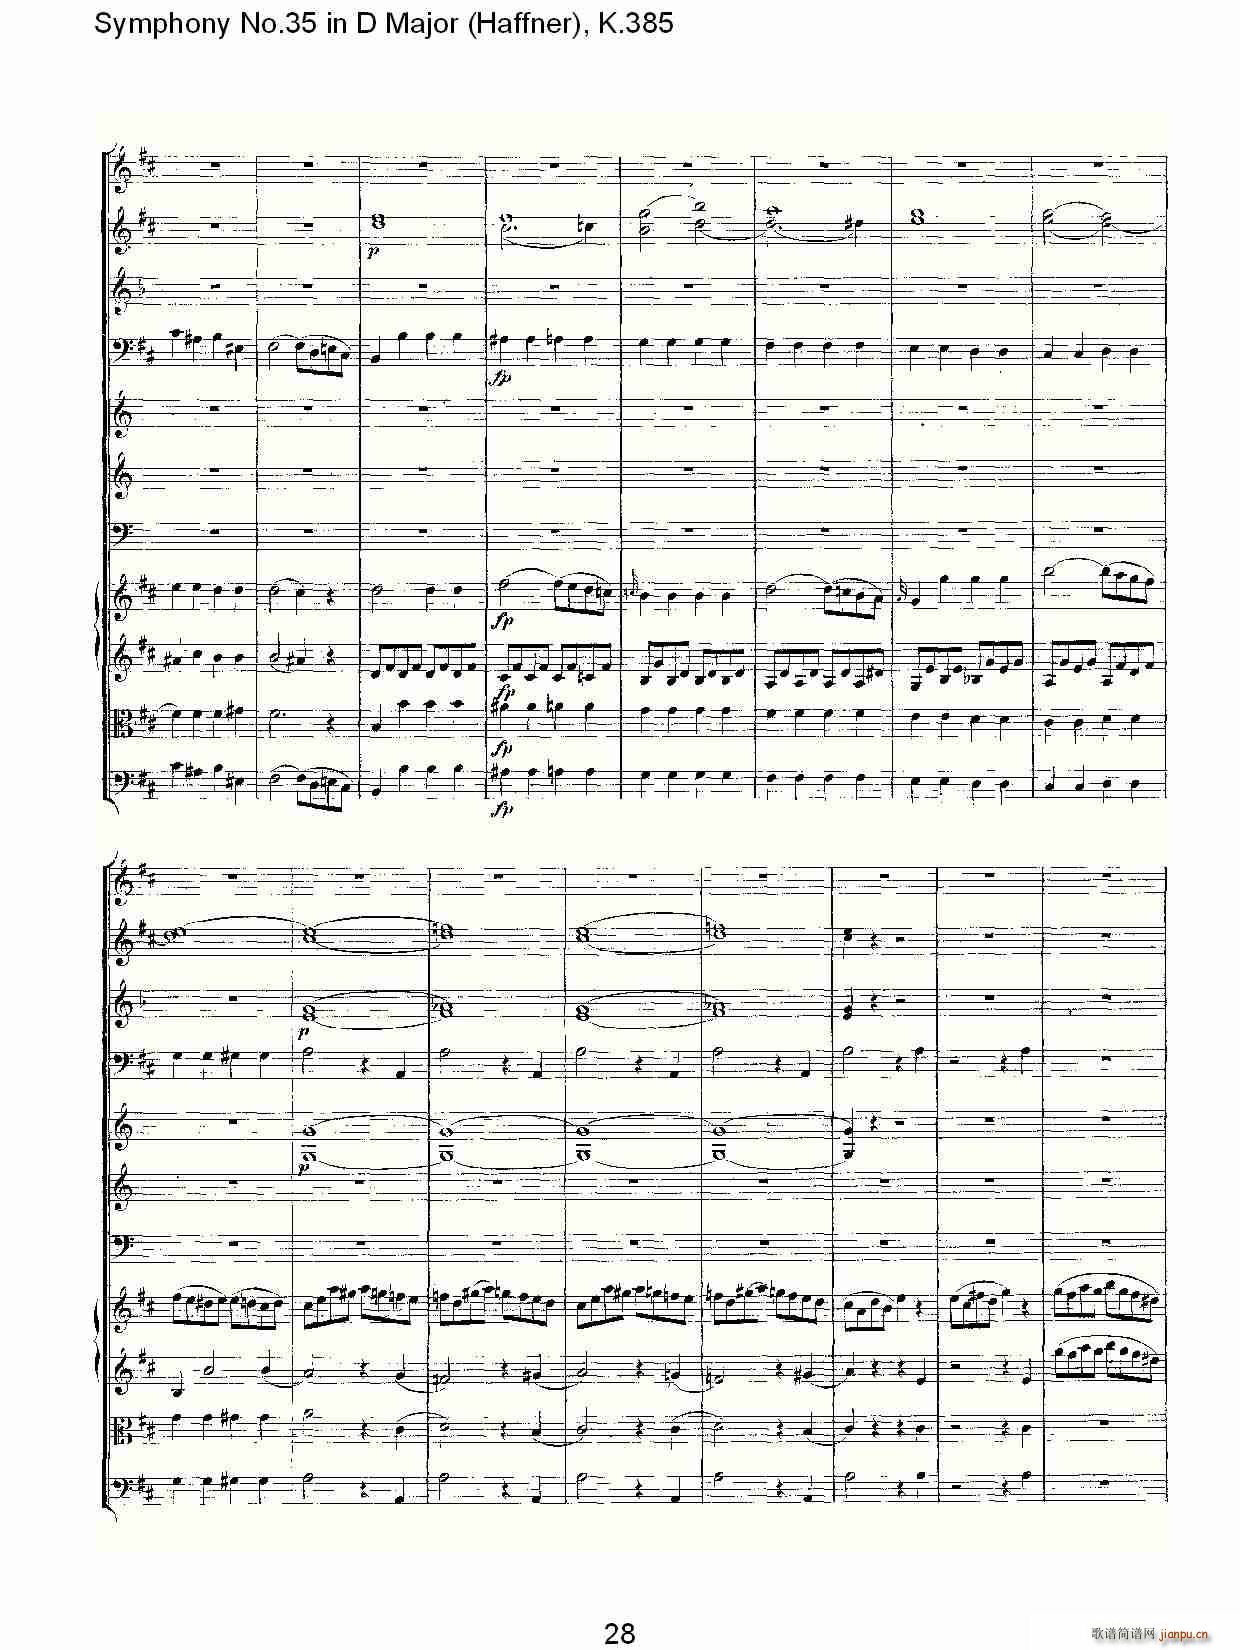 Symphony No.35 in D Major, K.385(ʮּ)28